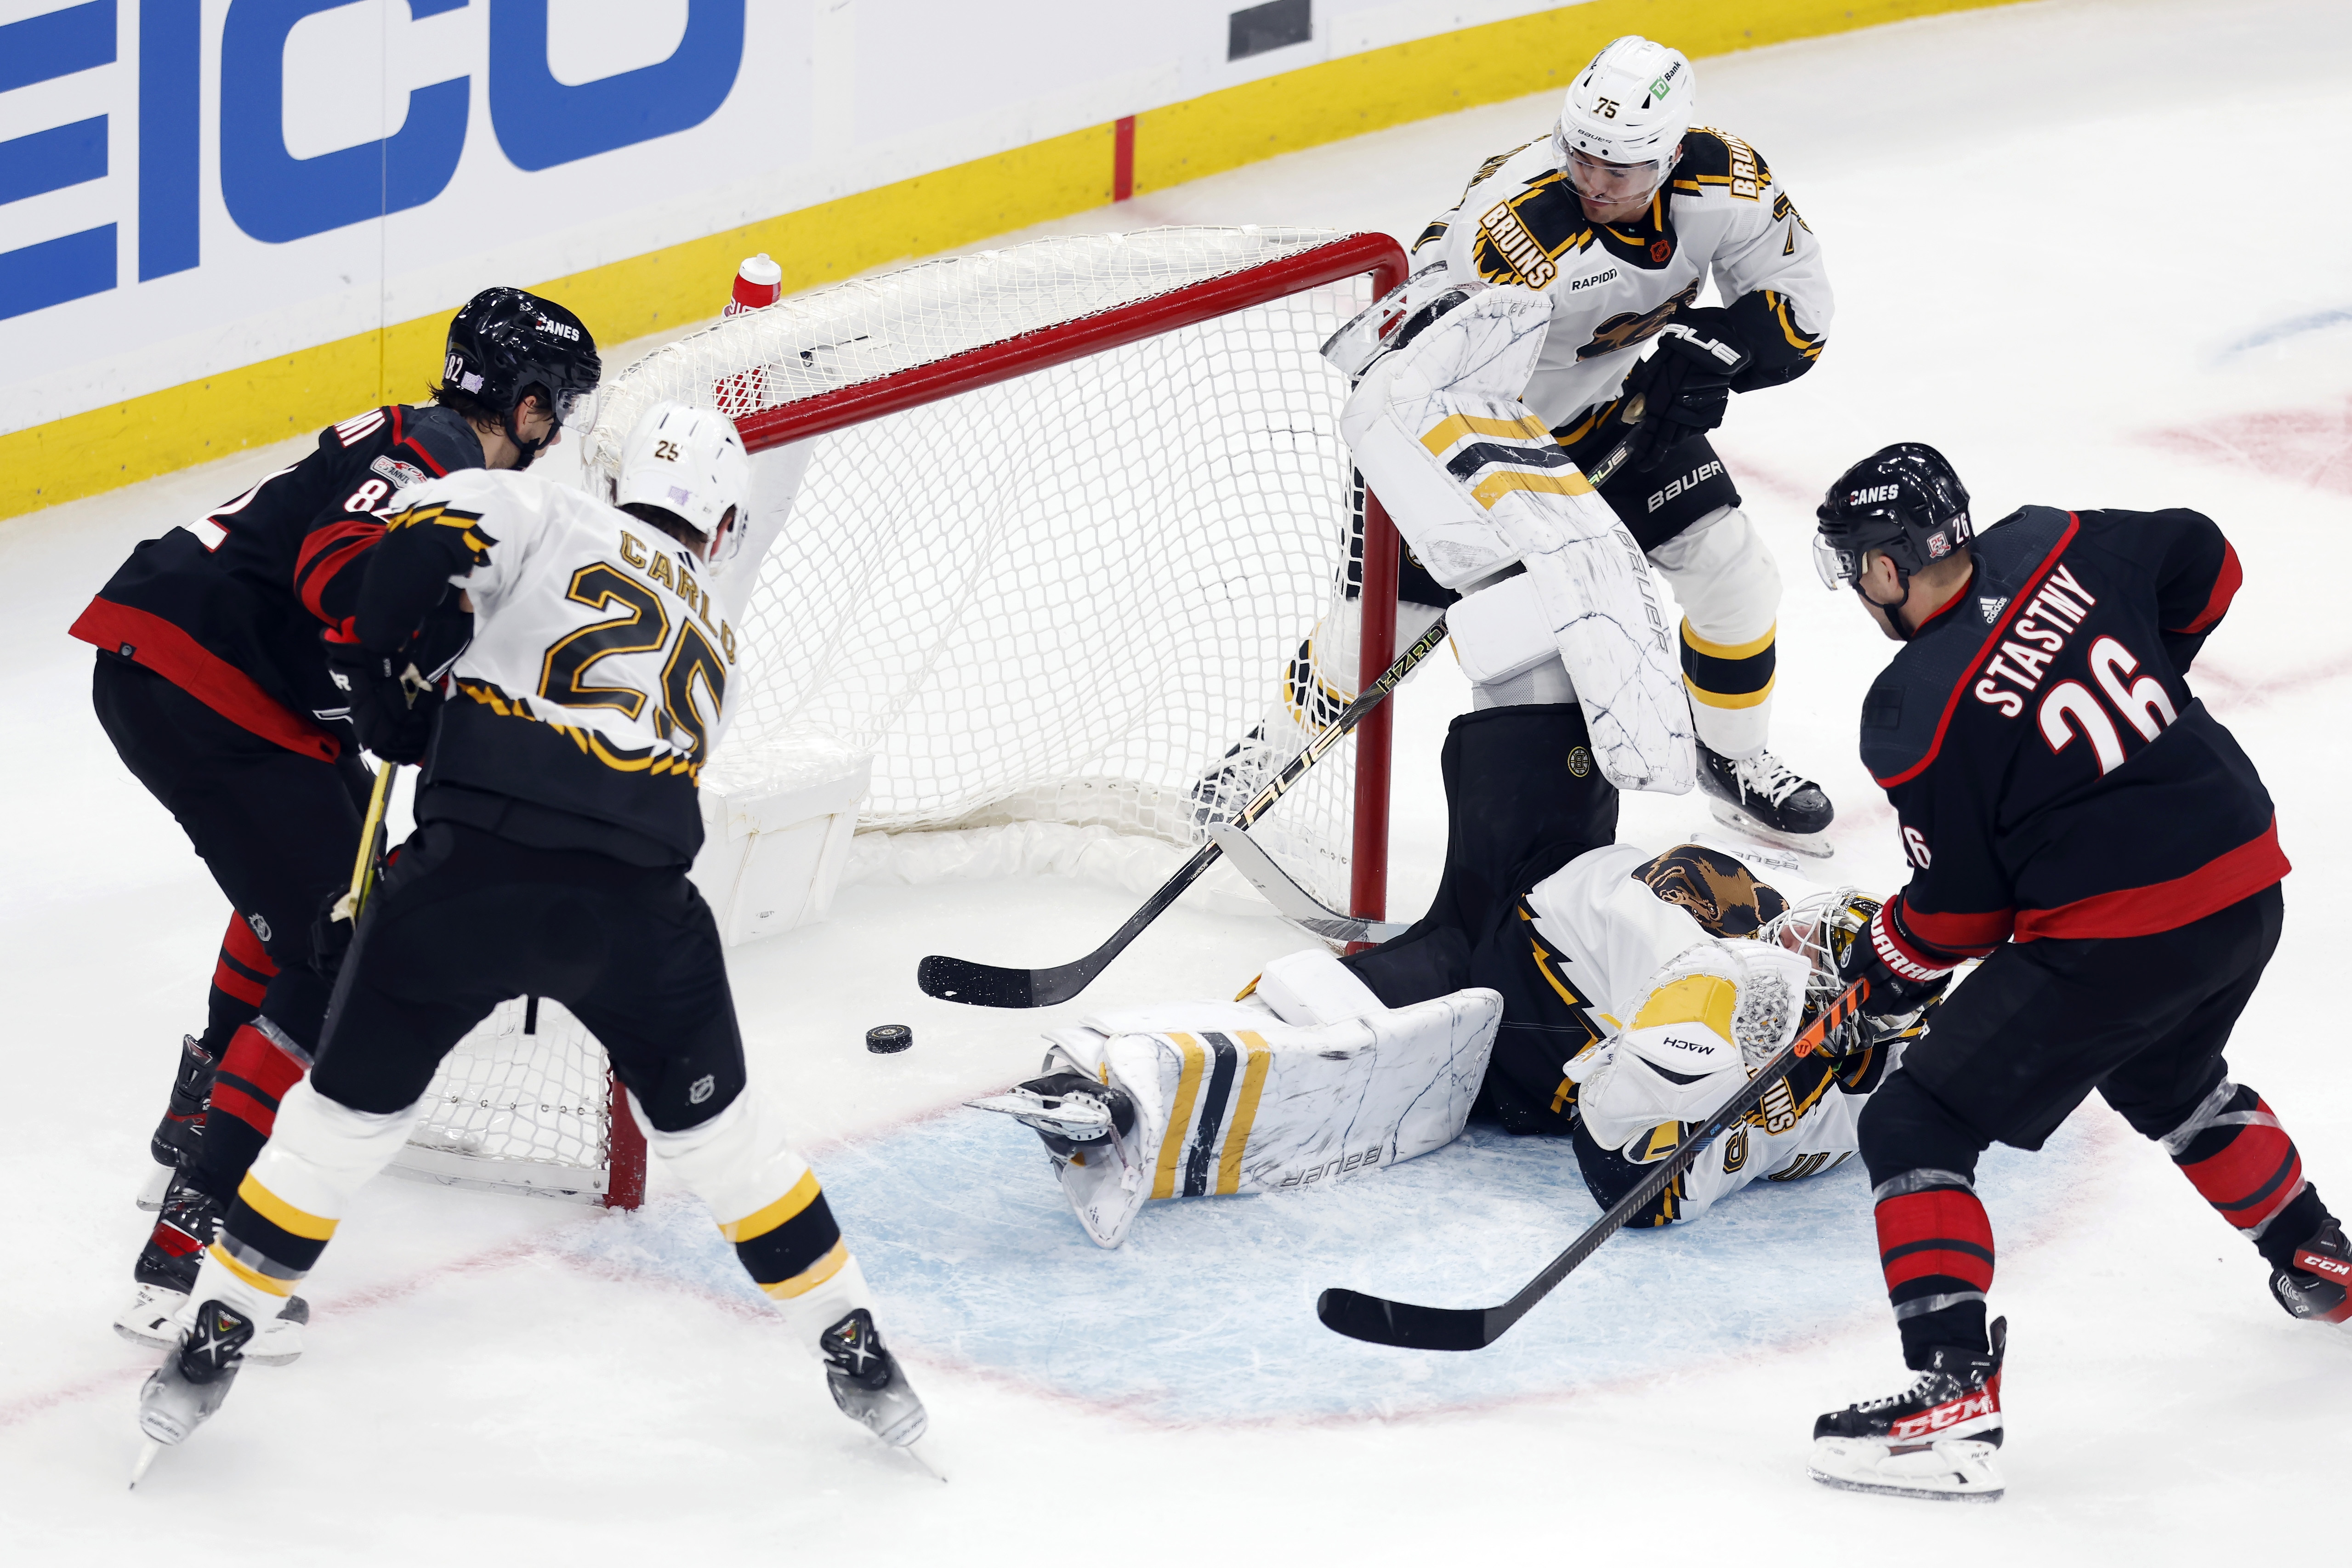 David Krejci injury: Bruins C sits again, will miss weekend games 